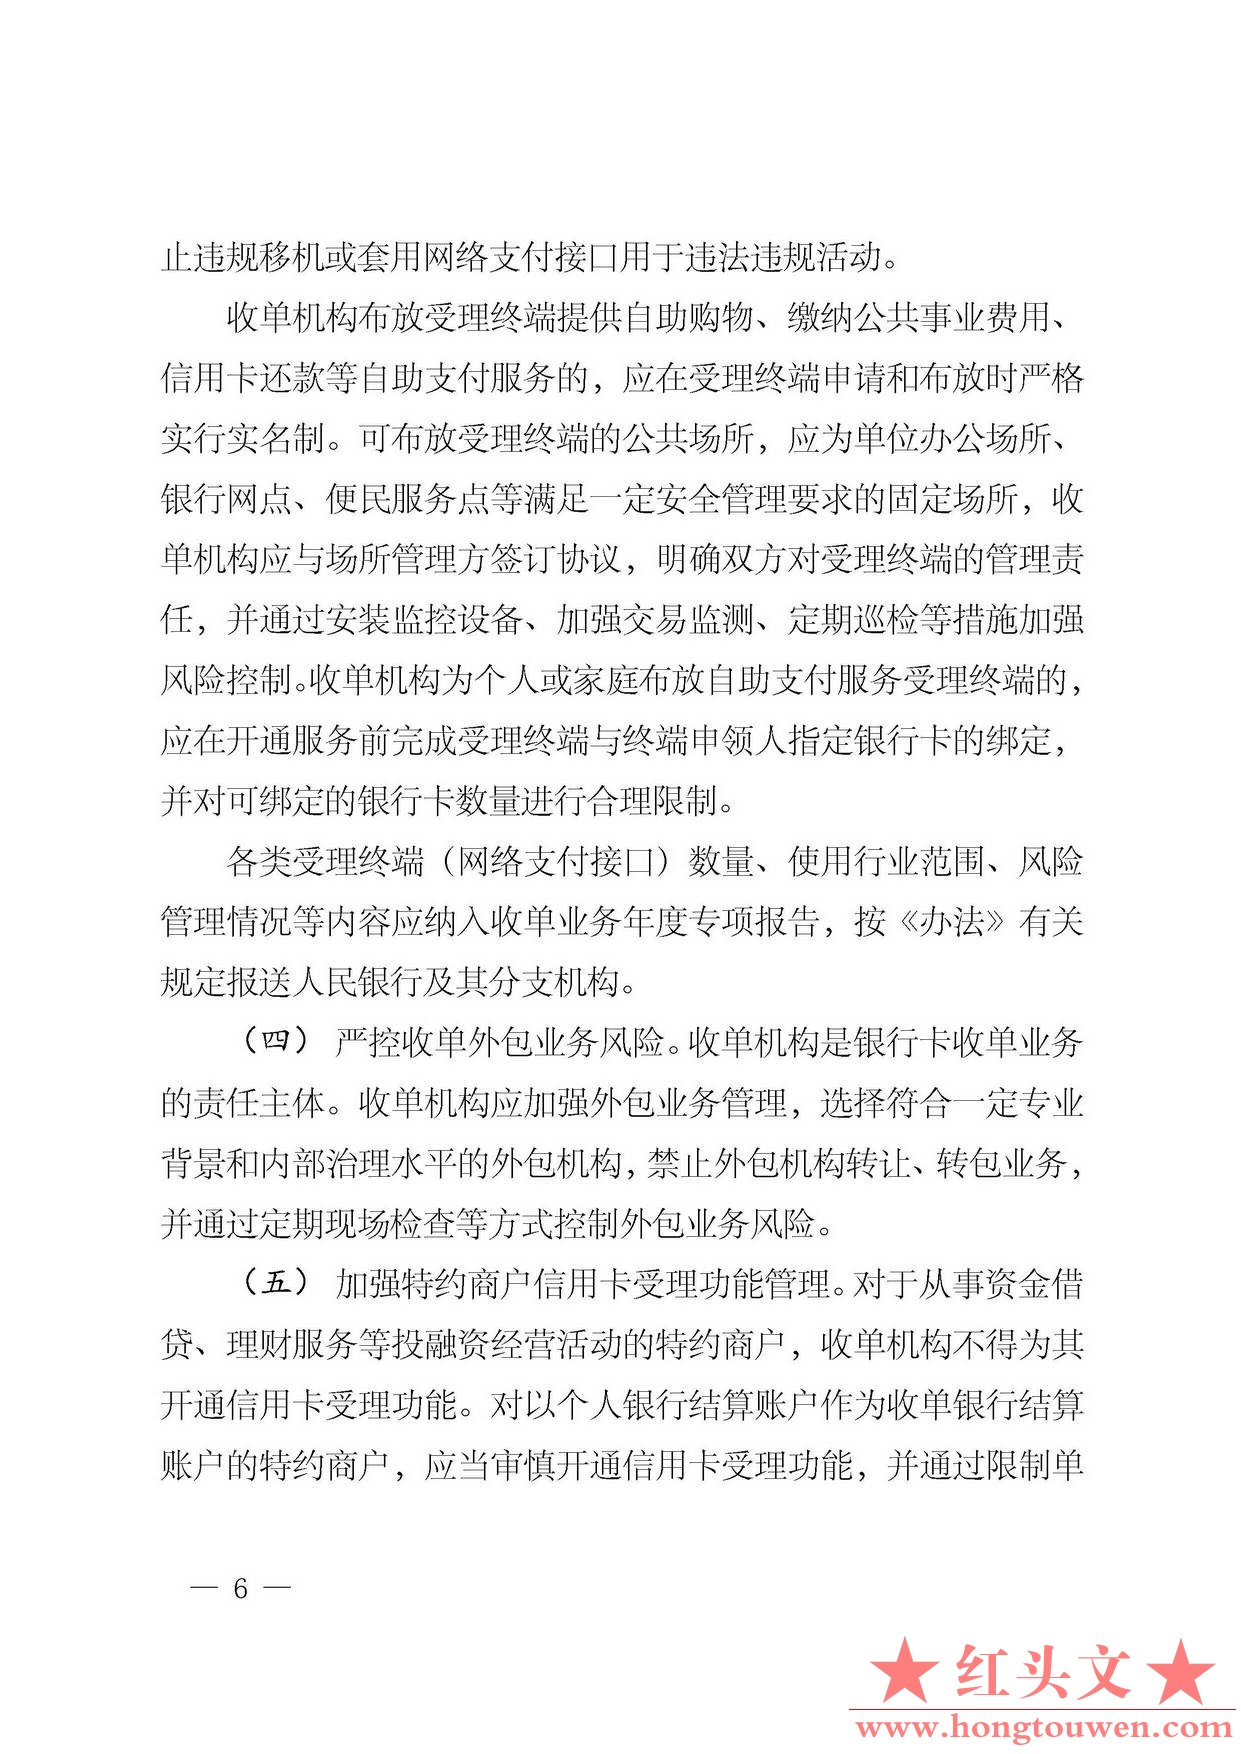 银发[2014]5号-中国人民银行关于加强银行卡业务管理的通知_页面_6.jpg